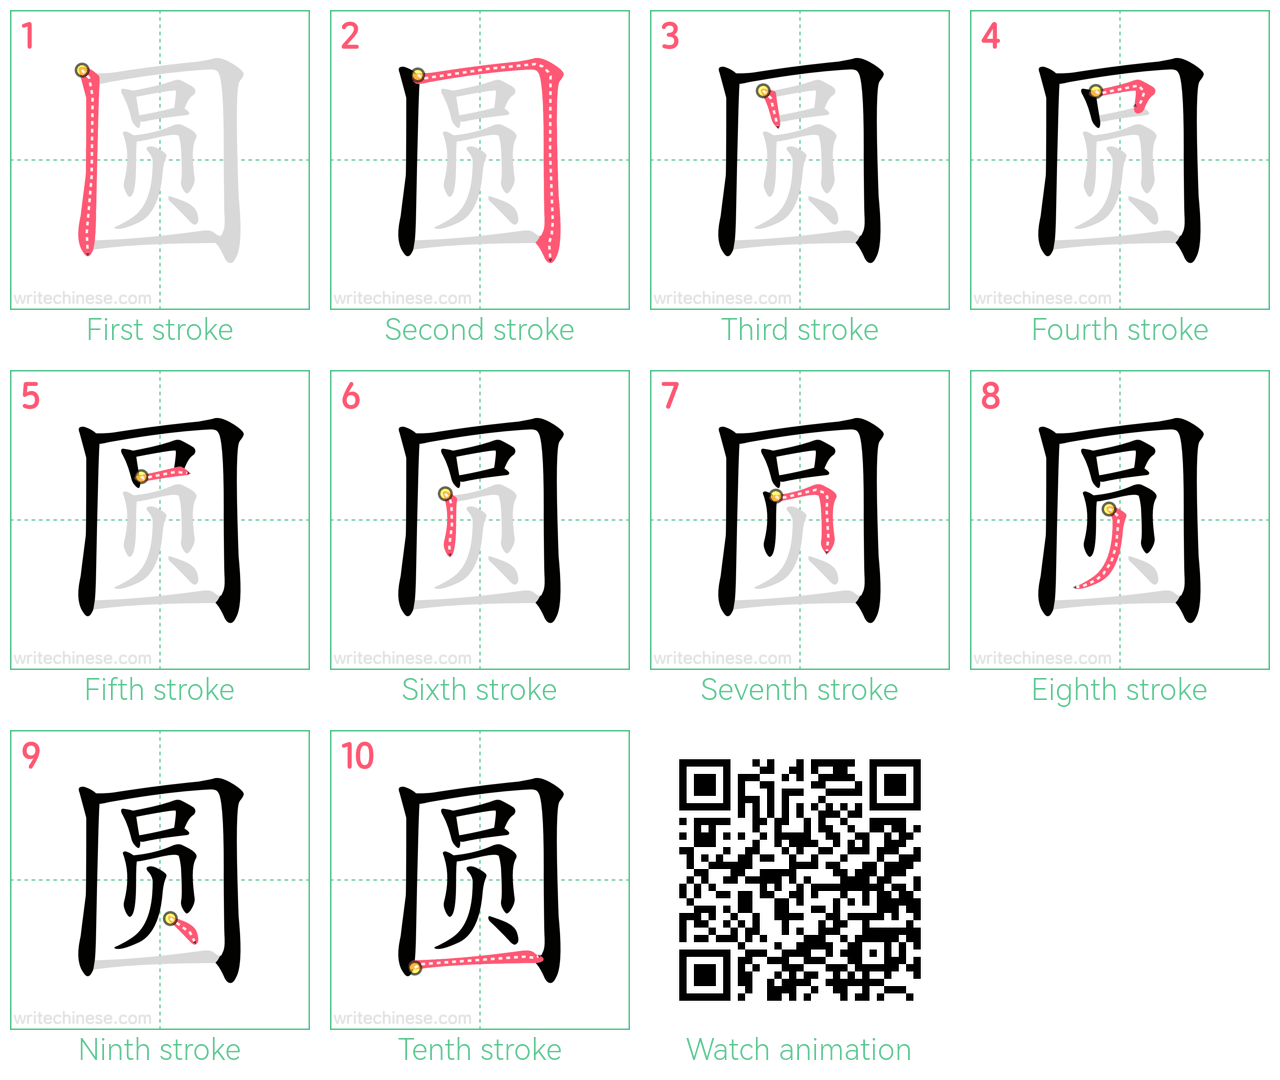 圆 step-by-step stroke order diagrams